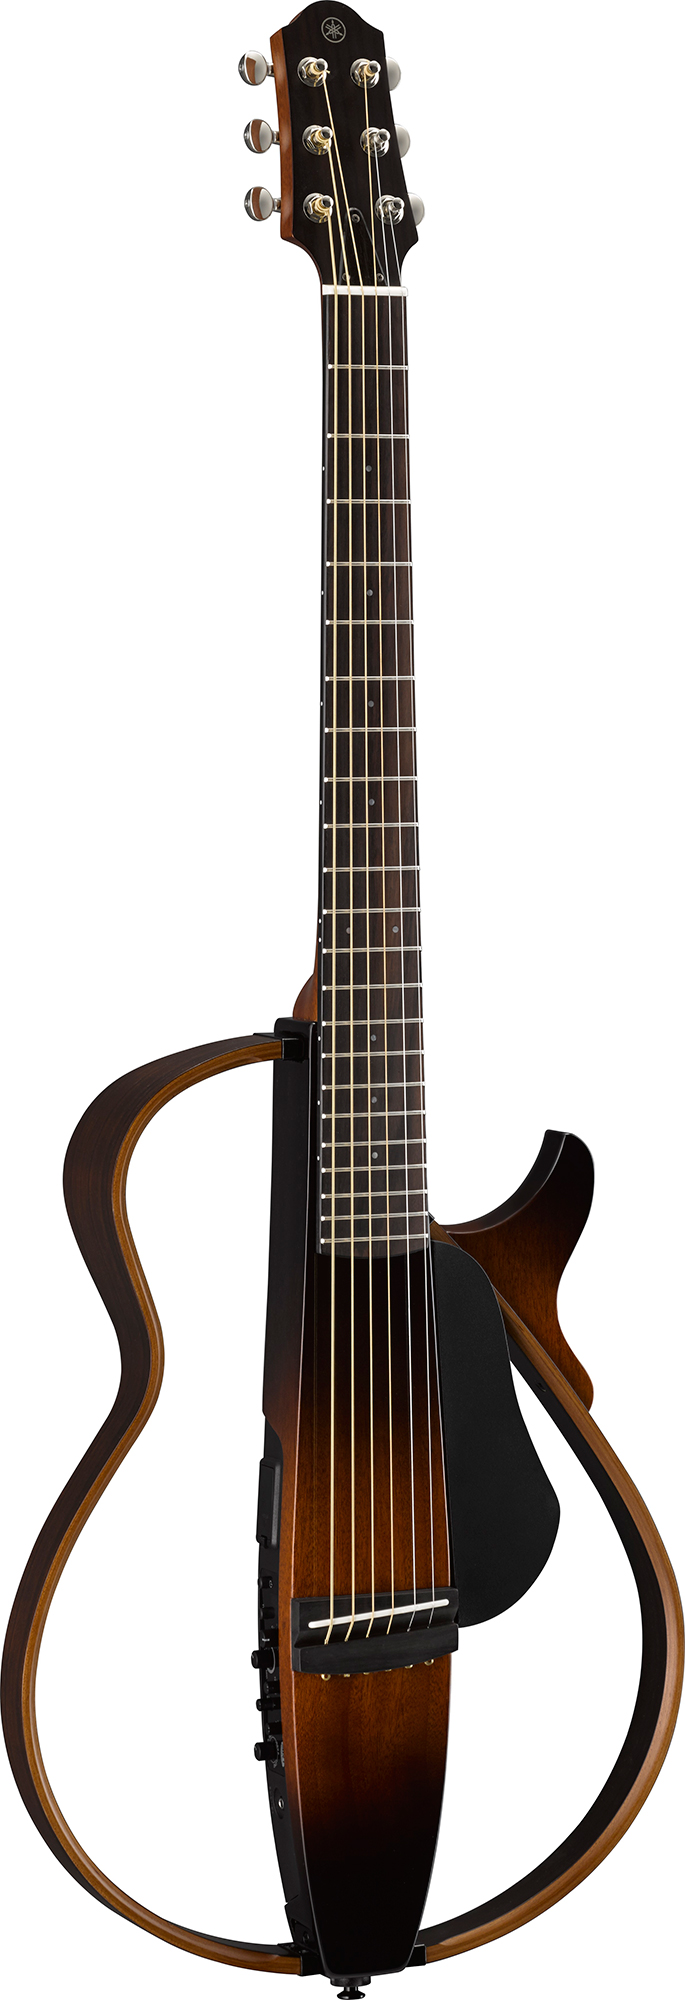 自然で空気感豊かなアコースティックギターサウンドを追求 ヤマハ サイレントギター『SLG200S』『SLG200N』 - ニュースリリース